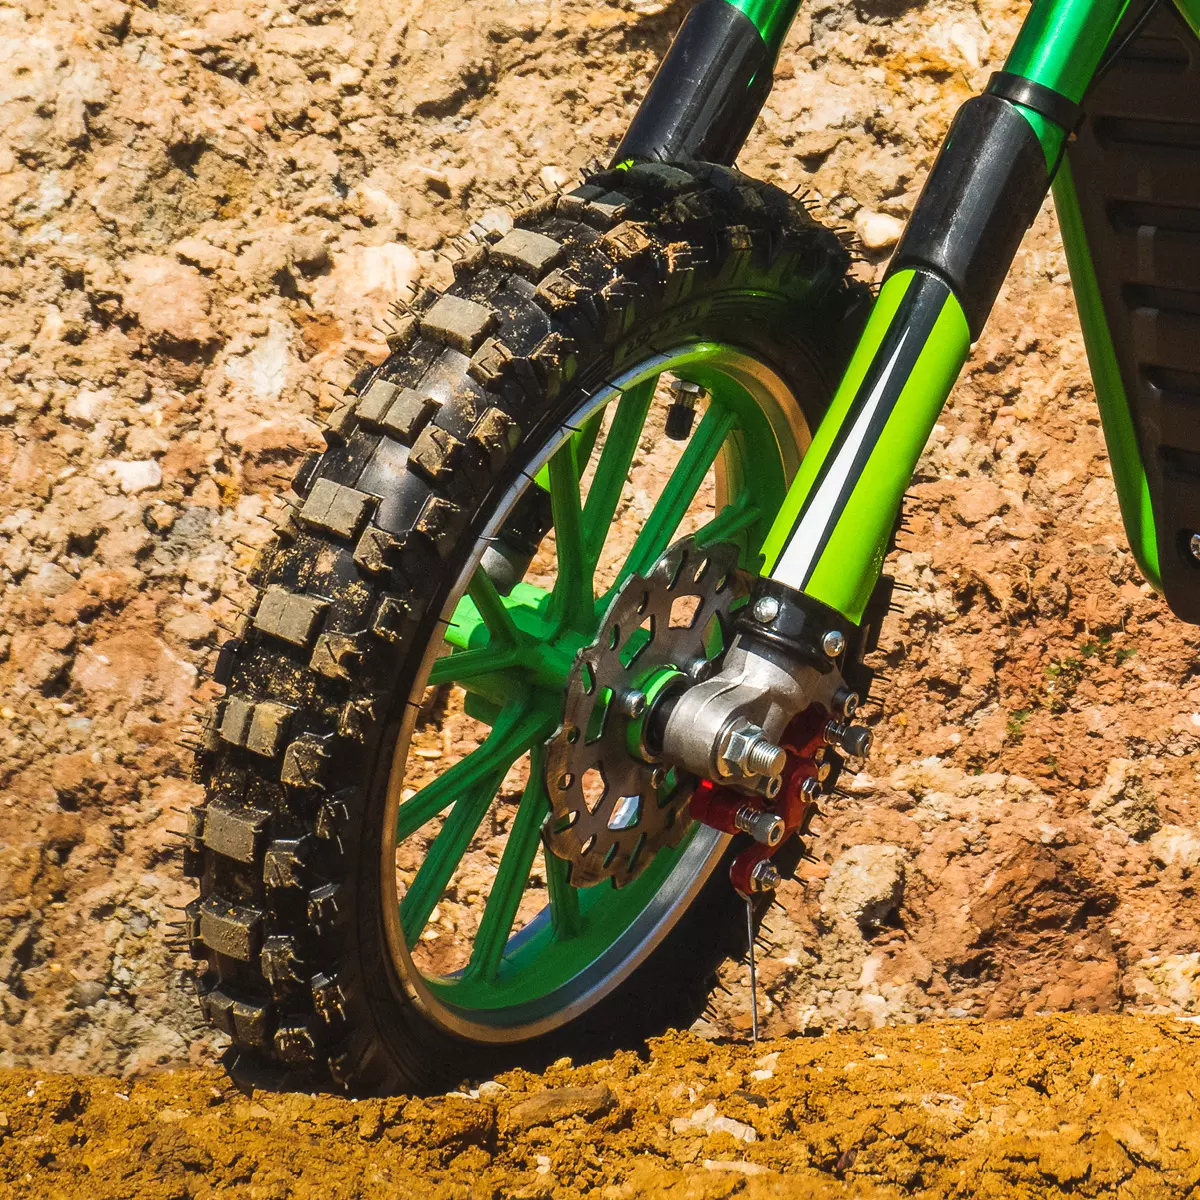 Vergrößerter Reifen des grünen Kindermotorrads mit dickem Profil